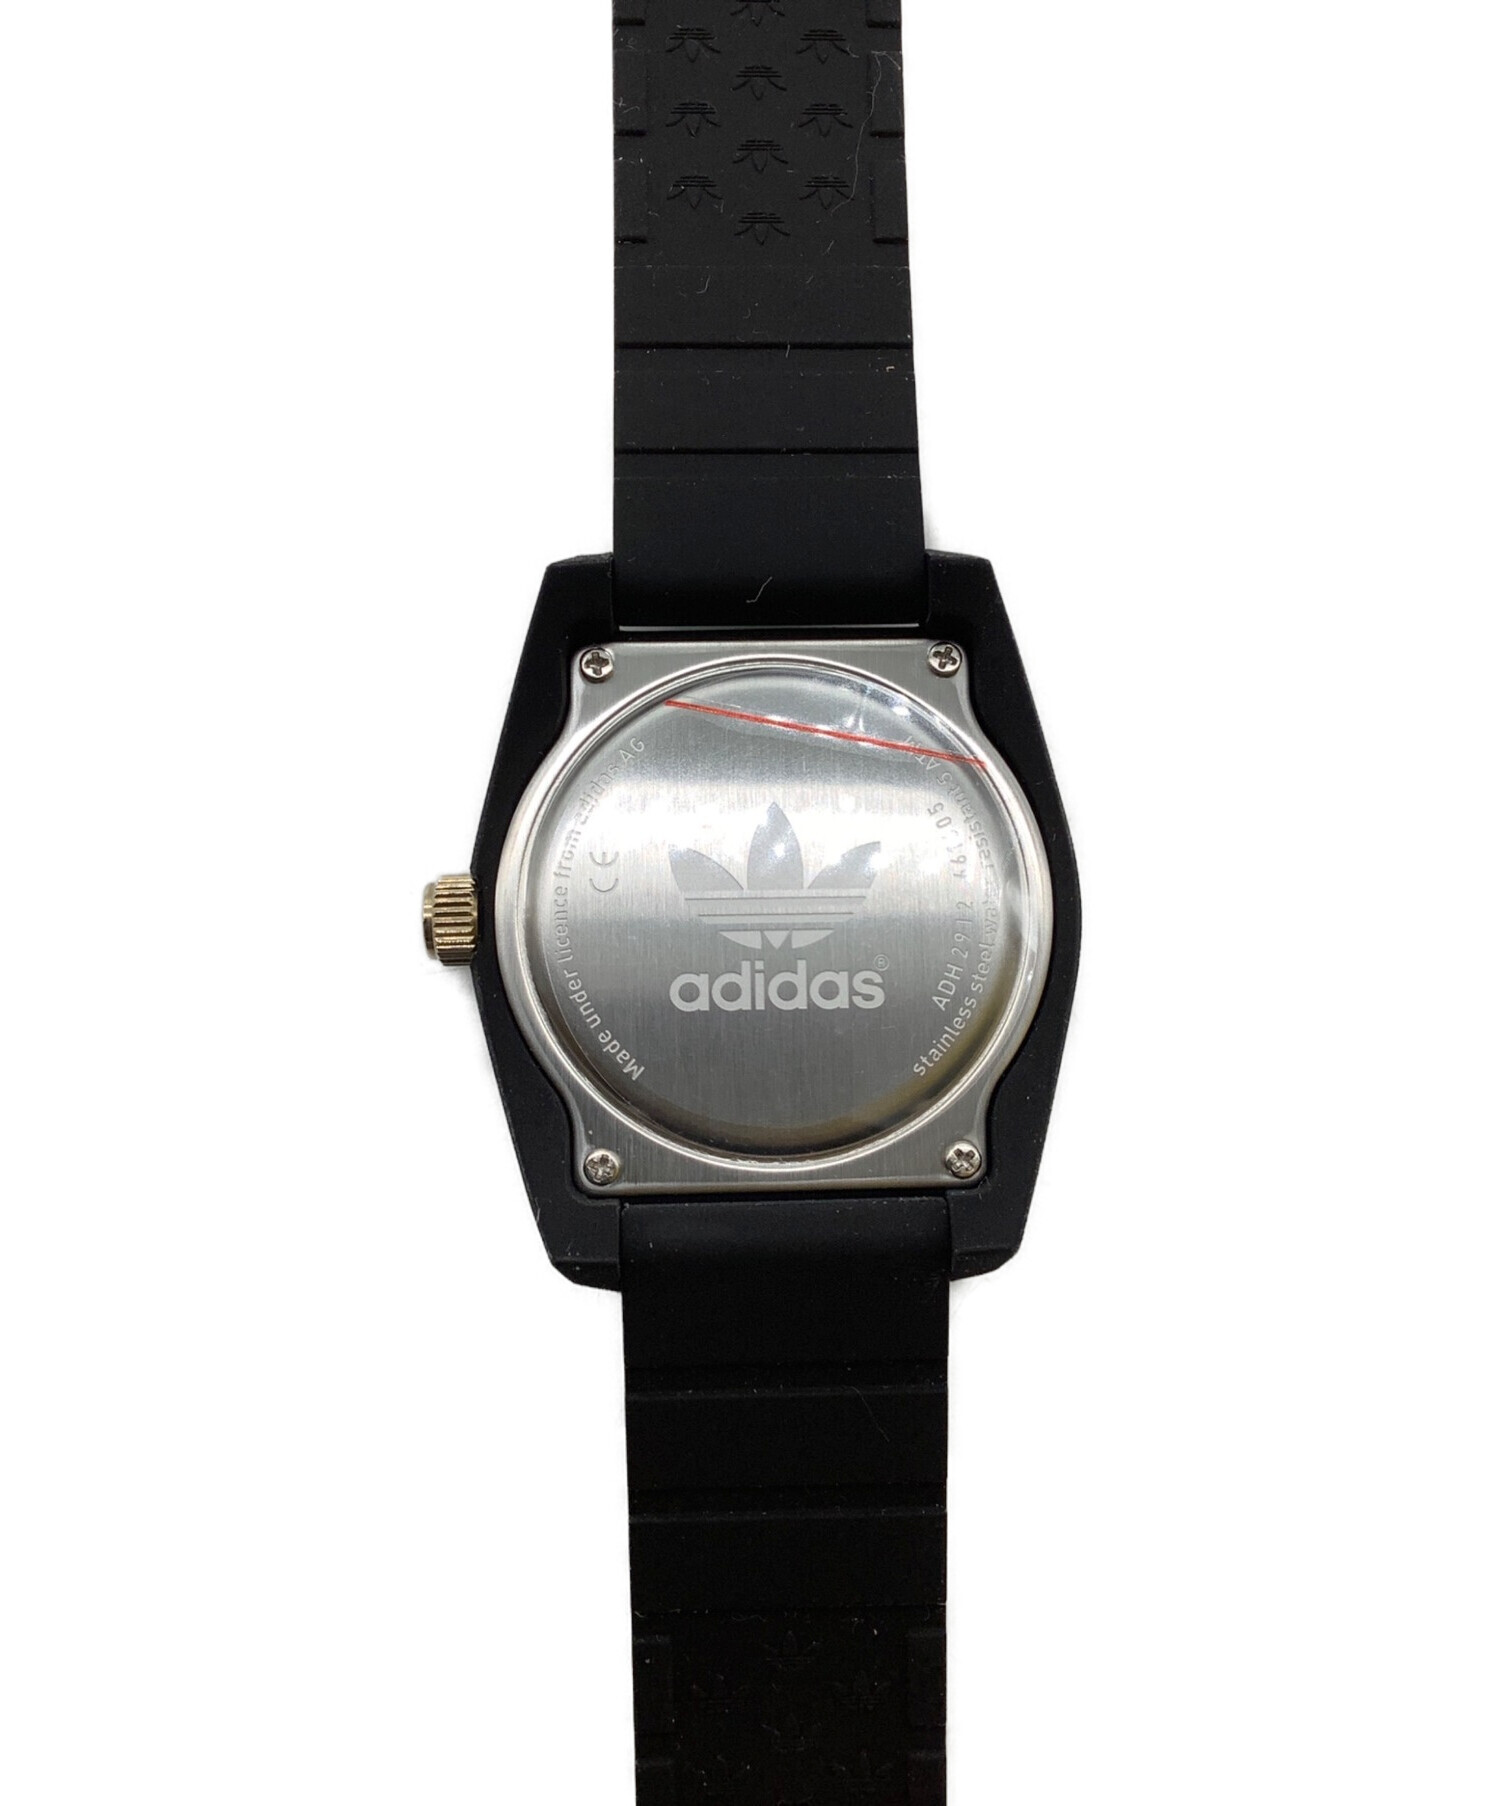 adidas 腕時計 中古品 黒 - 腕時計(アナログ)